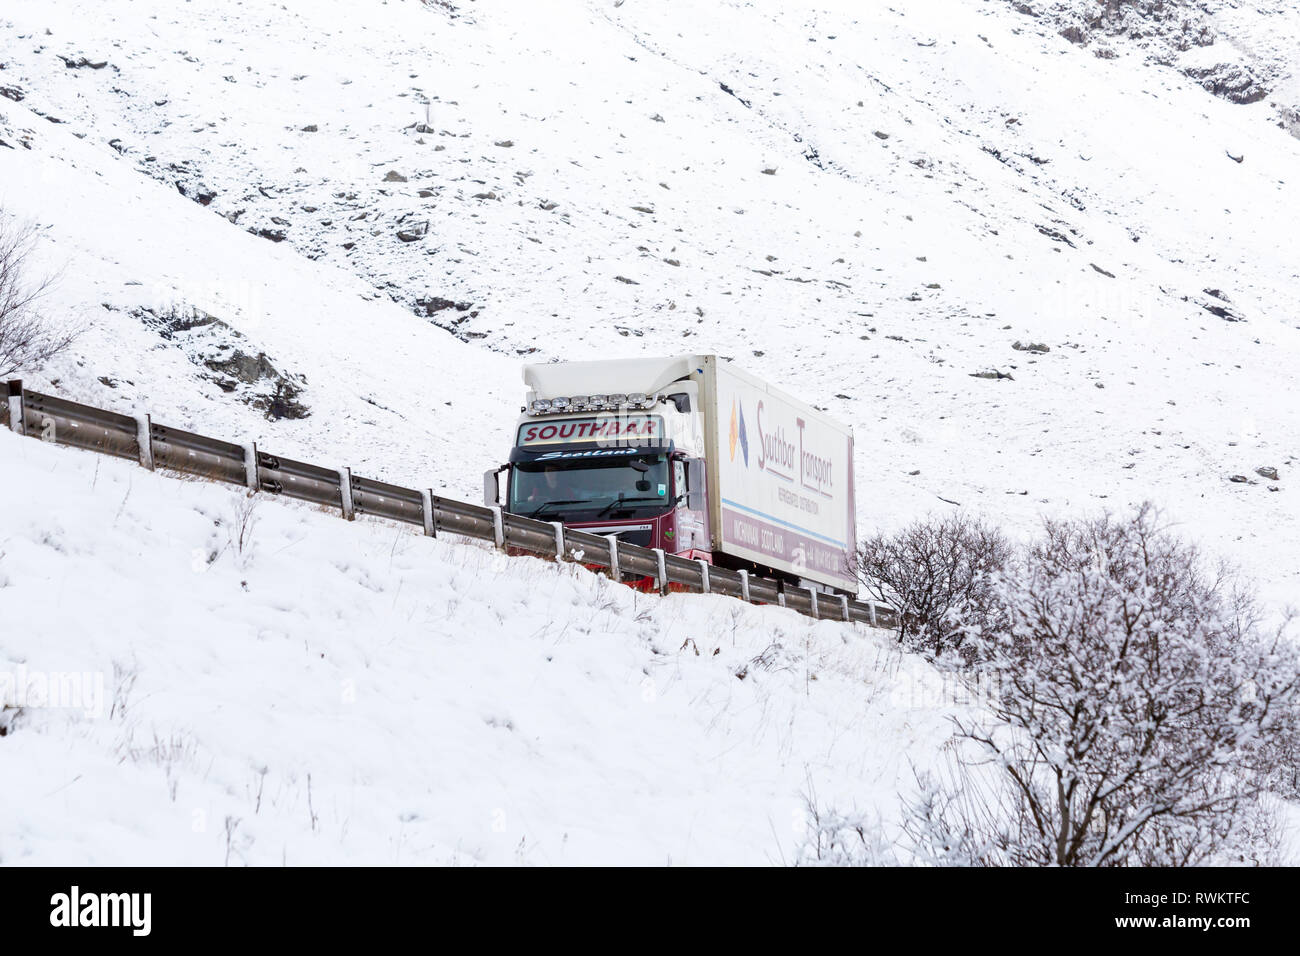 Southbar Transport Scotland Lkw Fahrzeug entlang der A82 Straße am Tag der Winter mit Schnee um an Rannoch Moor, Highlands, Schottland im Winter Stockfoto